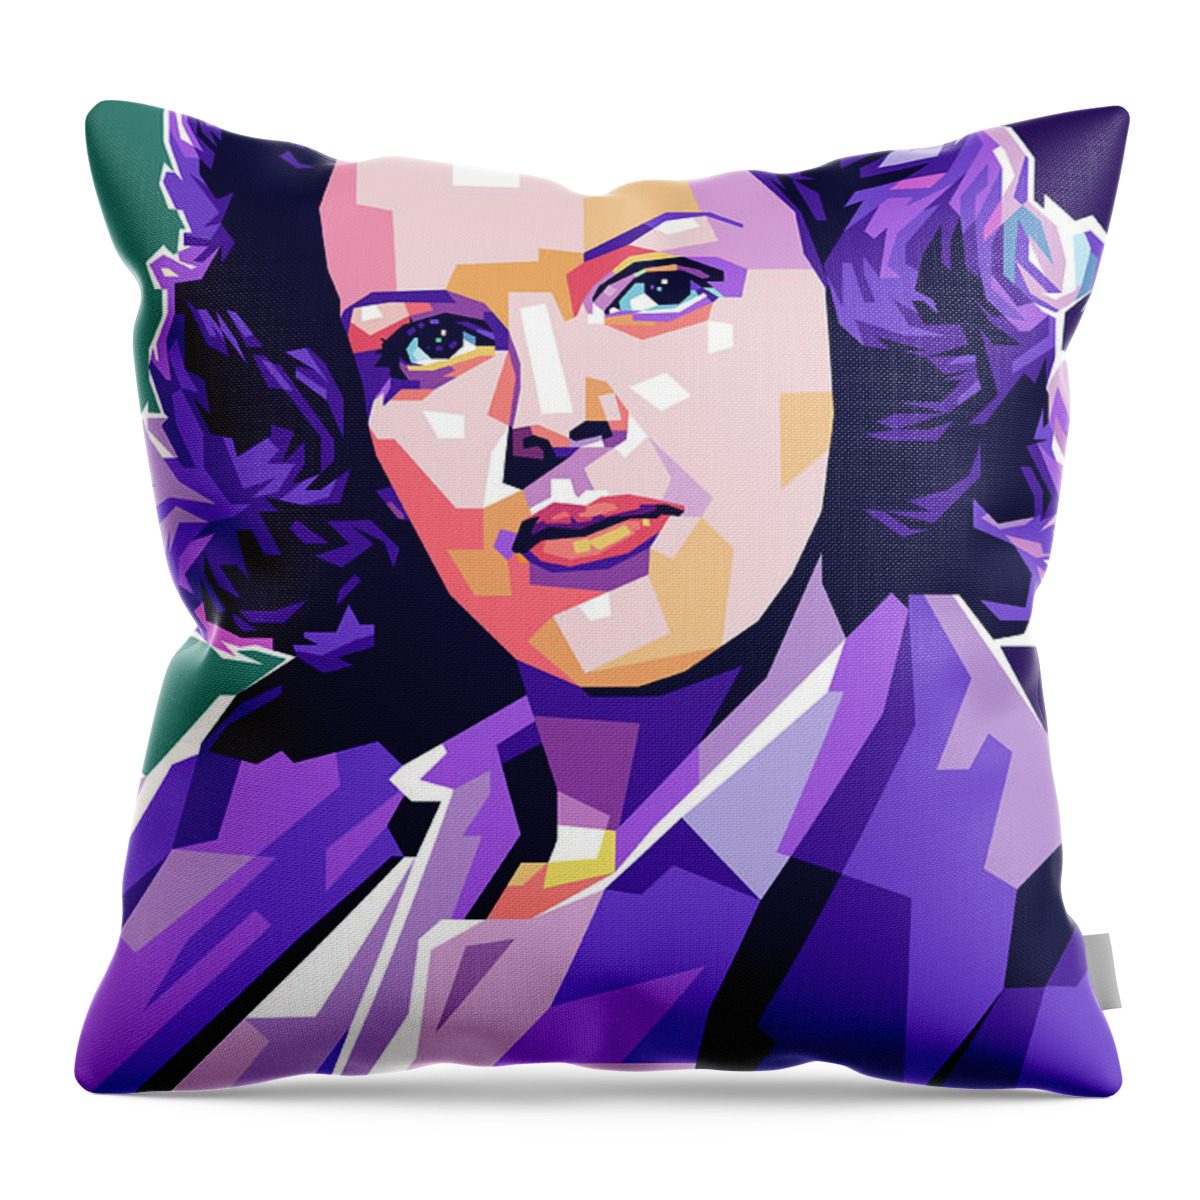 Judy Throw Pillow featuring the digital art Judy Garland portrait by Stars on Art